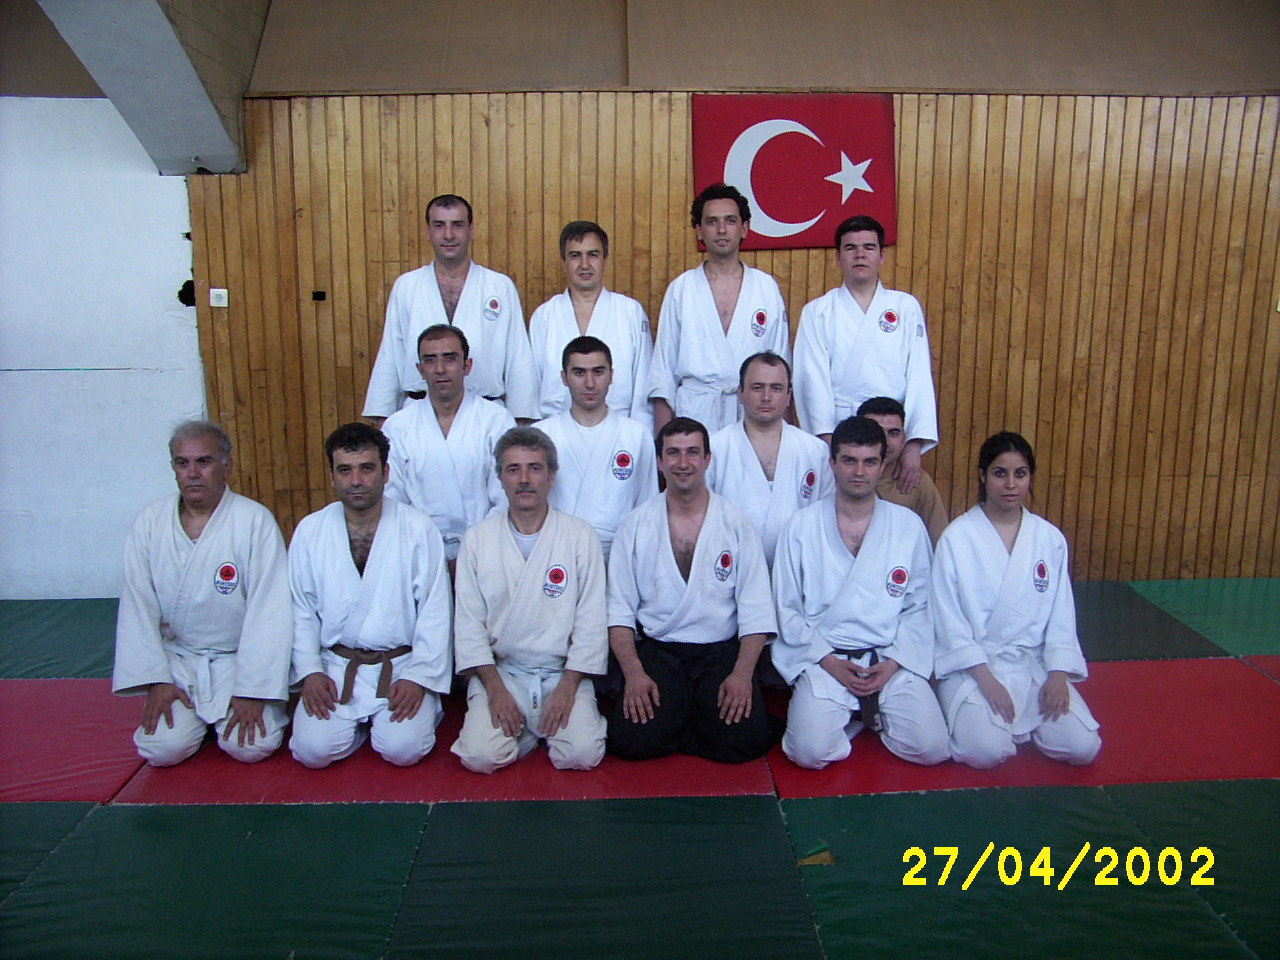 2002 Atatürk Spor Sarayında Çalışmalrımız devam ediyor